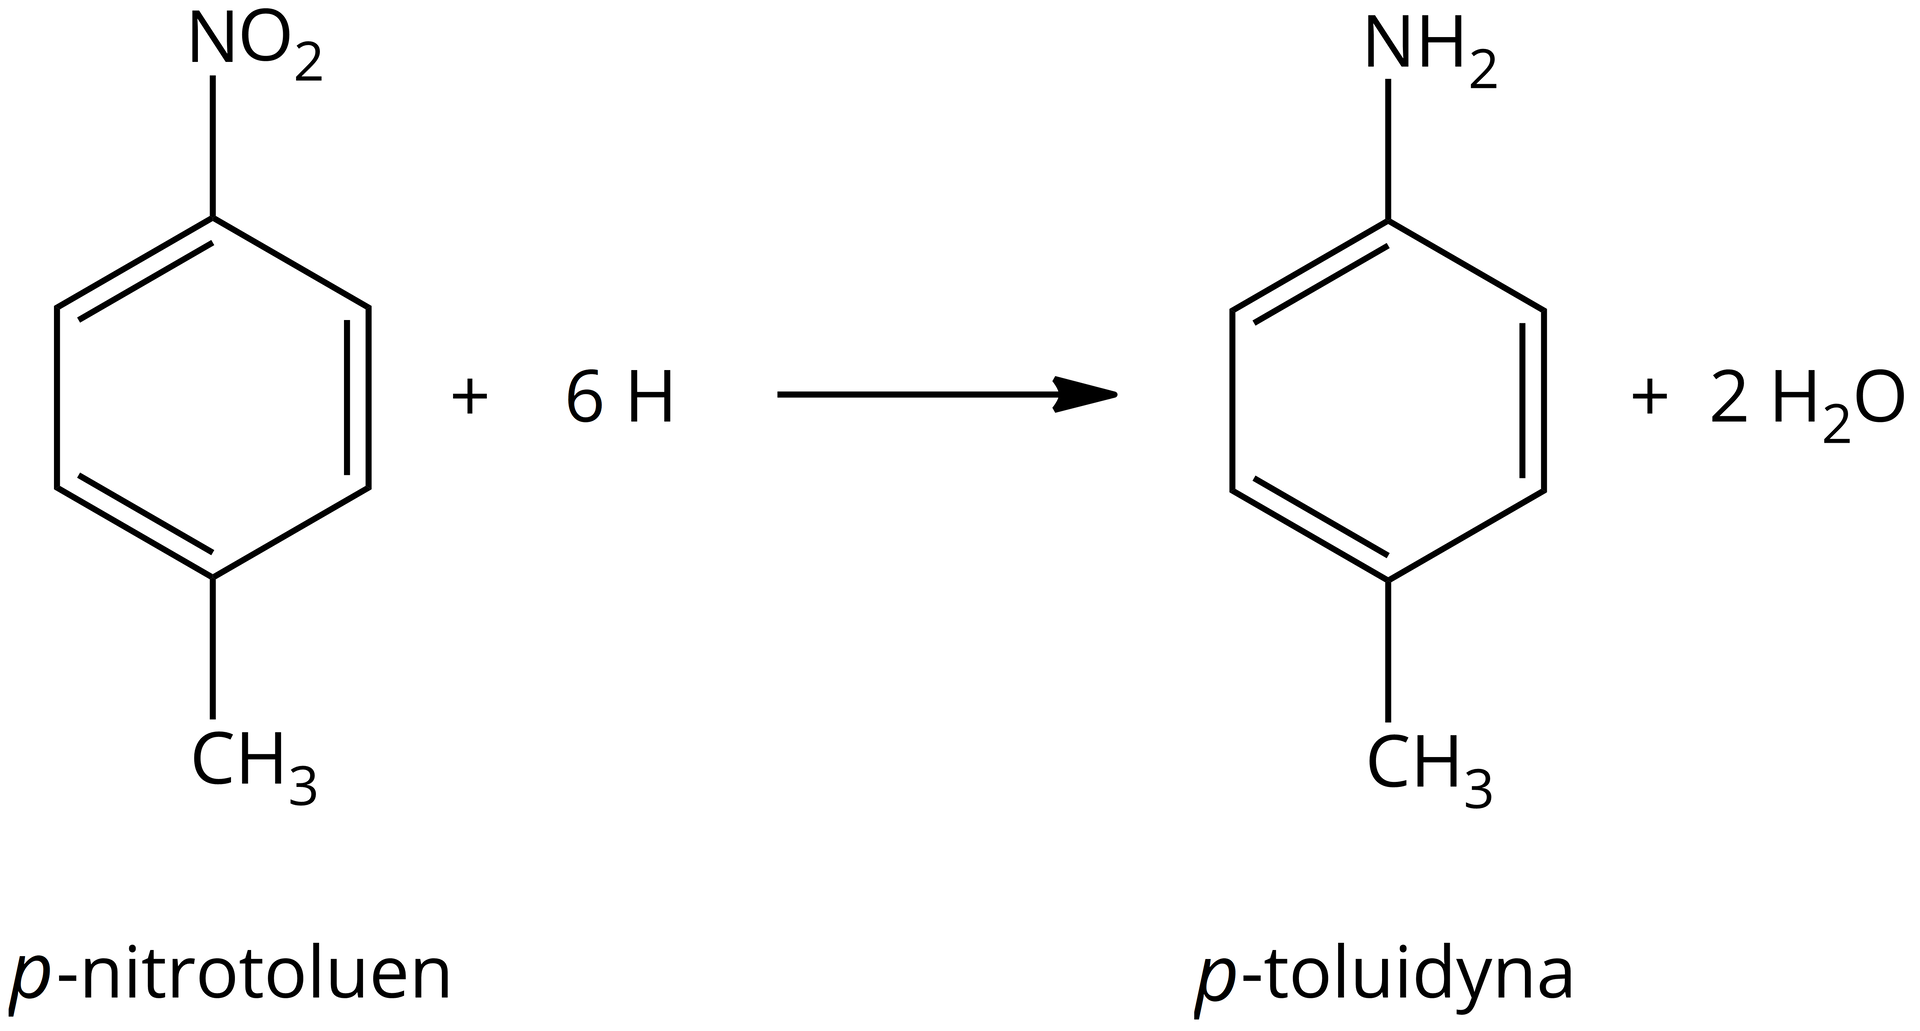 Ilustracja przedstawiająca równanie reakcji redukcji para nitrotoluenu. Cząsteczka para nitrotoluenu zbudowana z sześcioczłonowego pierścienia aromatycznego podstawionego przy atomie węgla C 1 grupą metylową CH3 oraz przy atomie węgla C 4, to znaczy w pozycji para grupą nitrową NO2. Dodać sześć atomów wodoru H. Strzałka w prawo, za strzałką cząsteczka para toluidyny zbudowanej z sześcioczłonowego pierścienia aromatycznego podstawionego przy atomie węgla C 1 grupą metylową CH3, zaś przy atomie węgla C 4, to znaczy w pozycji para, grupą aminową NH2. Dodać dwie cząsteczki wody H2O.